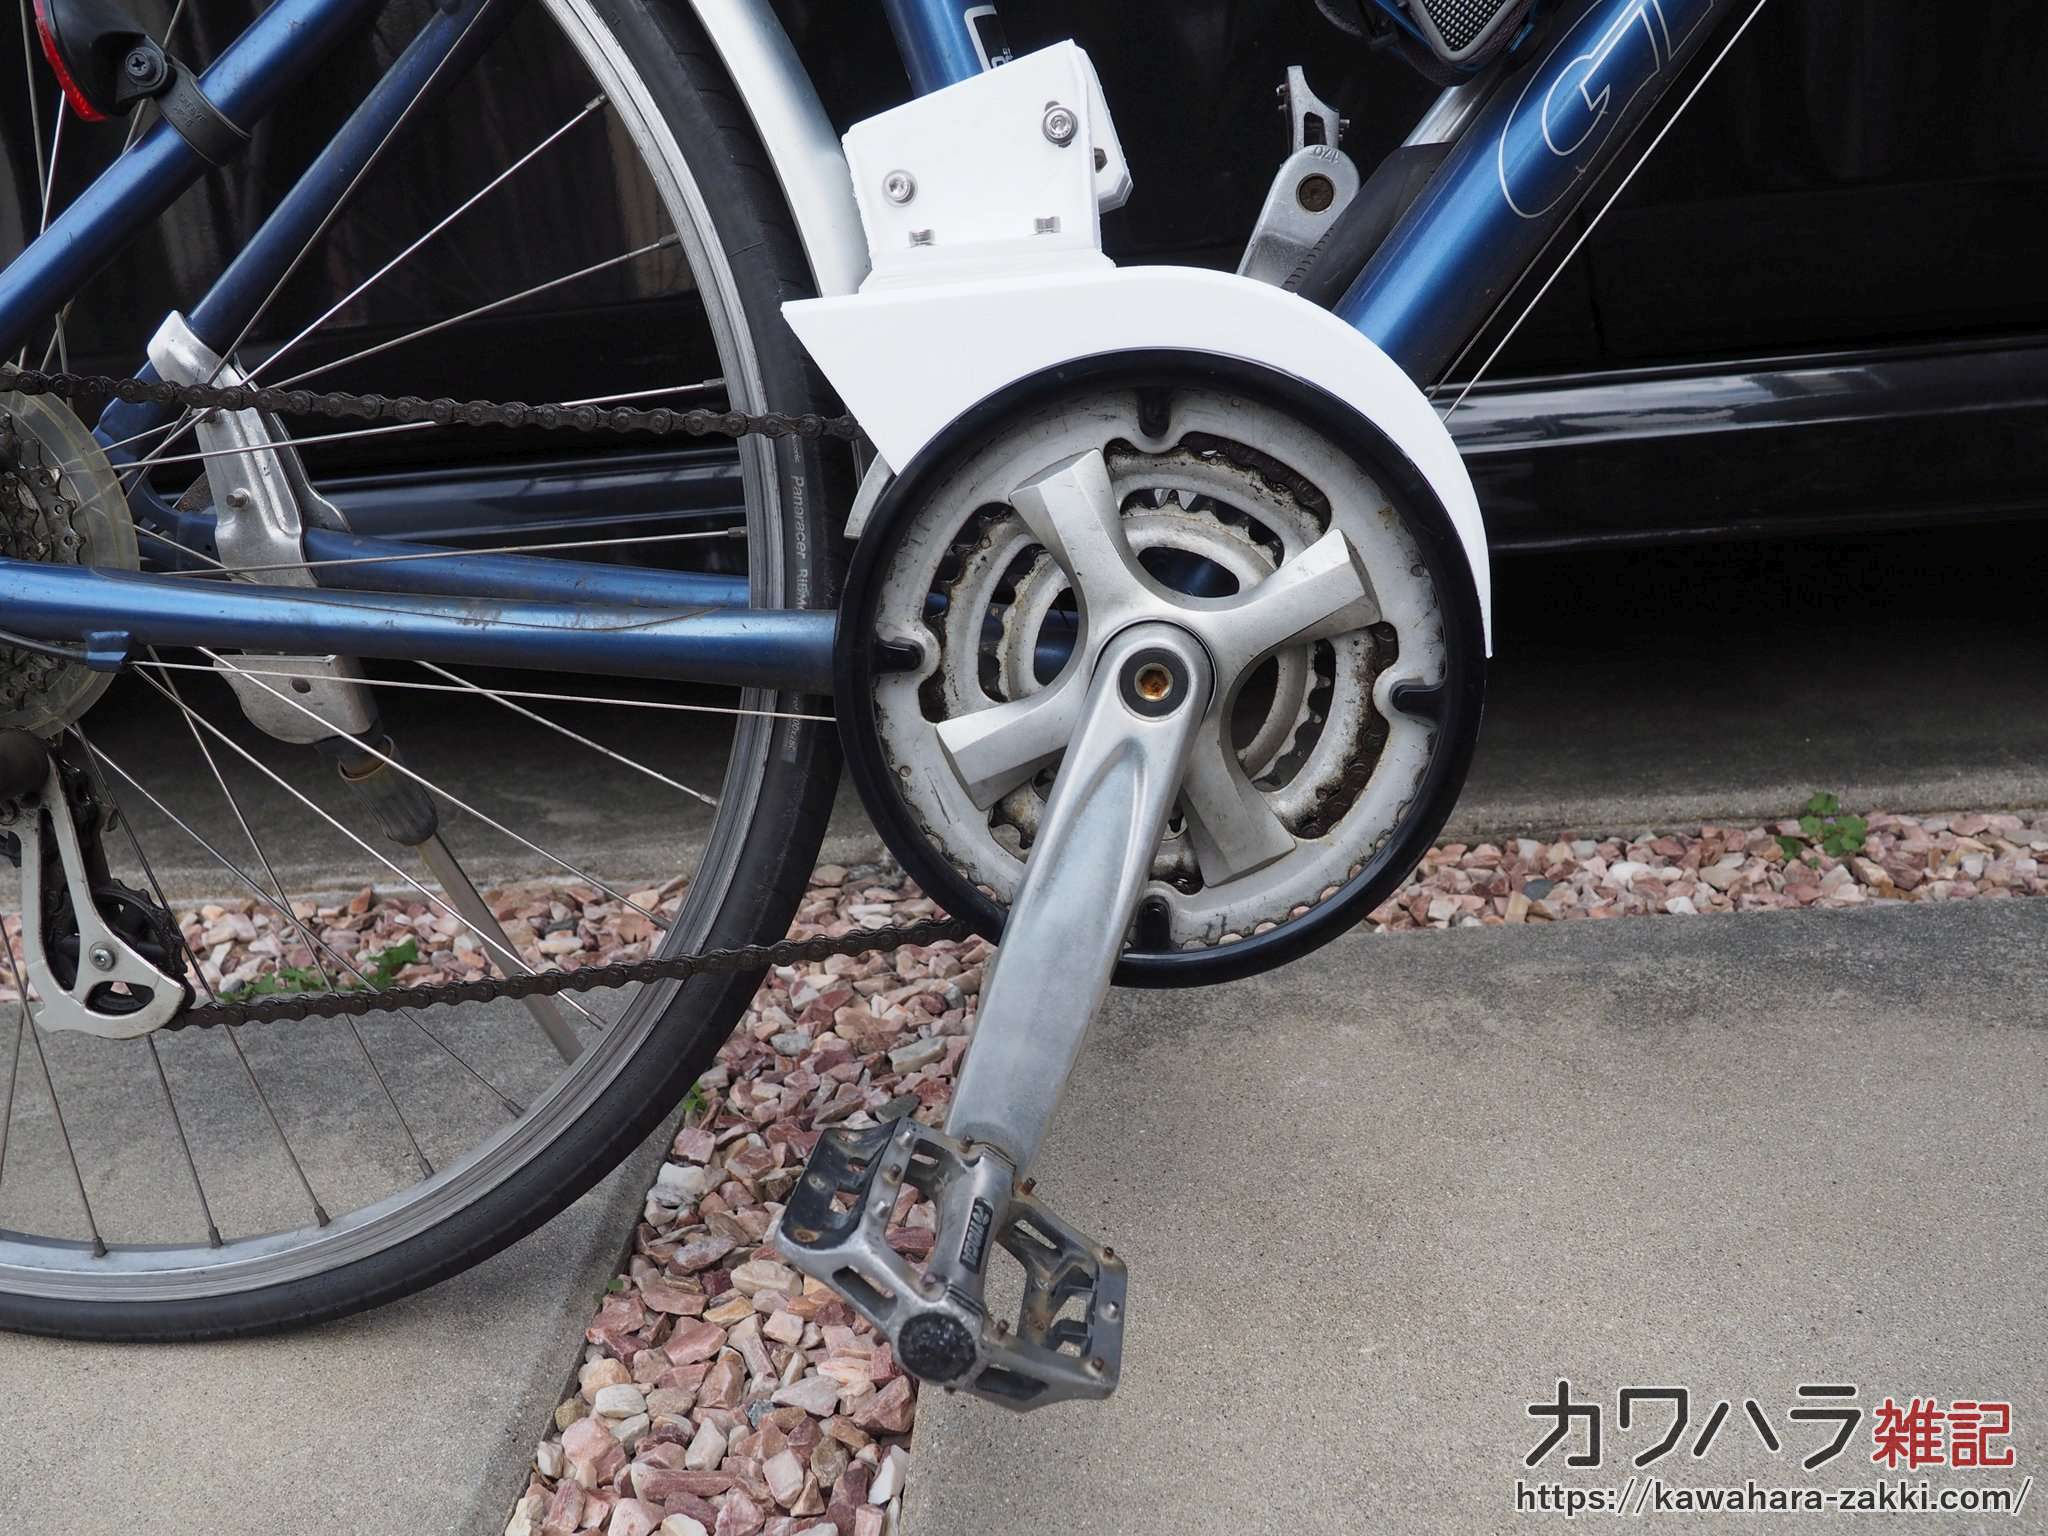 自転車(クロスバイク)のチェーンカバーを3Dプリンターで自作した | カワハラ雑記